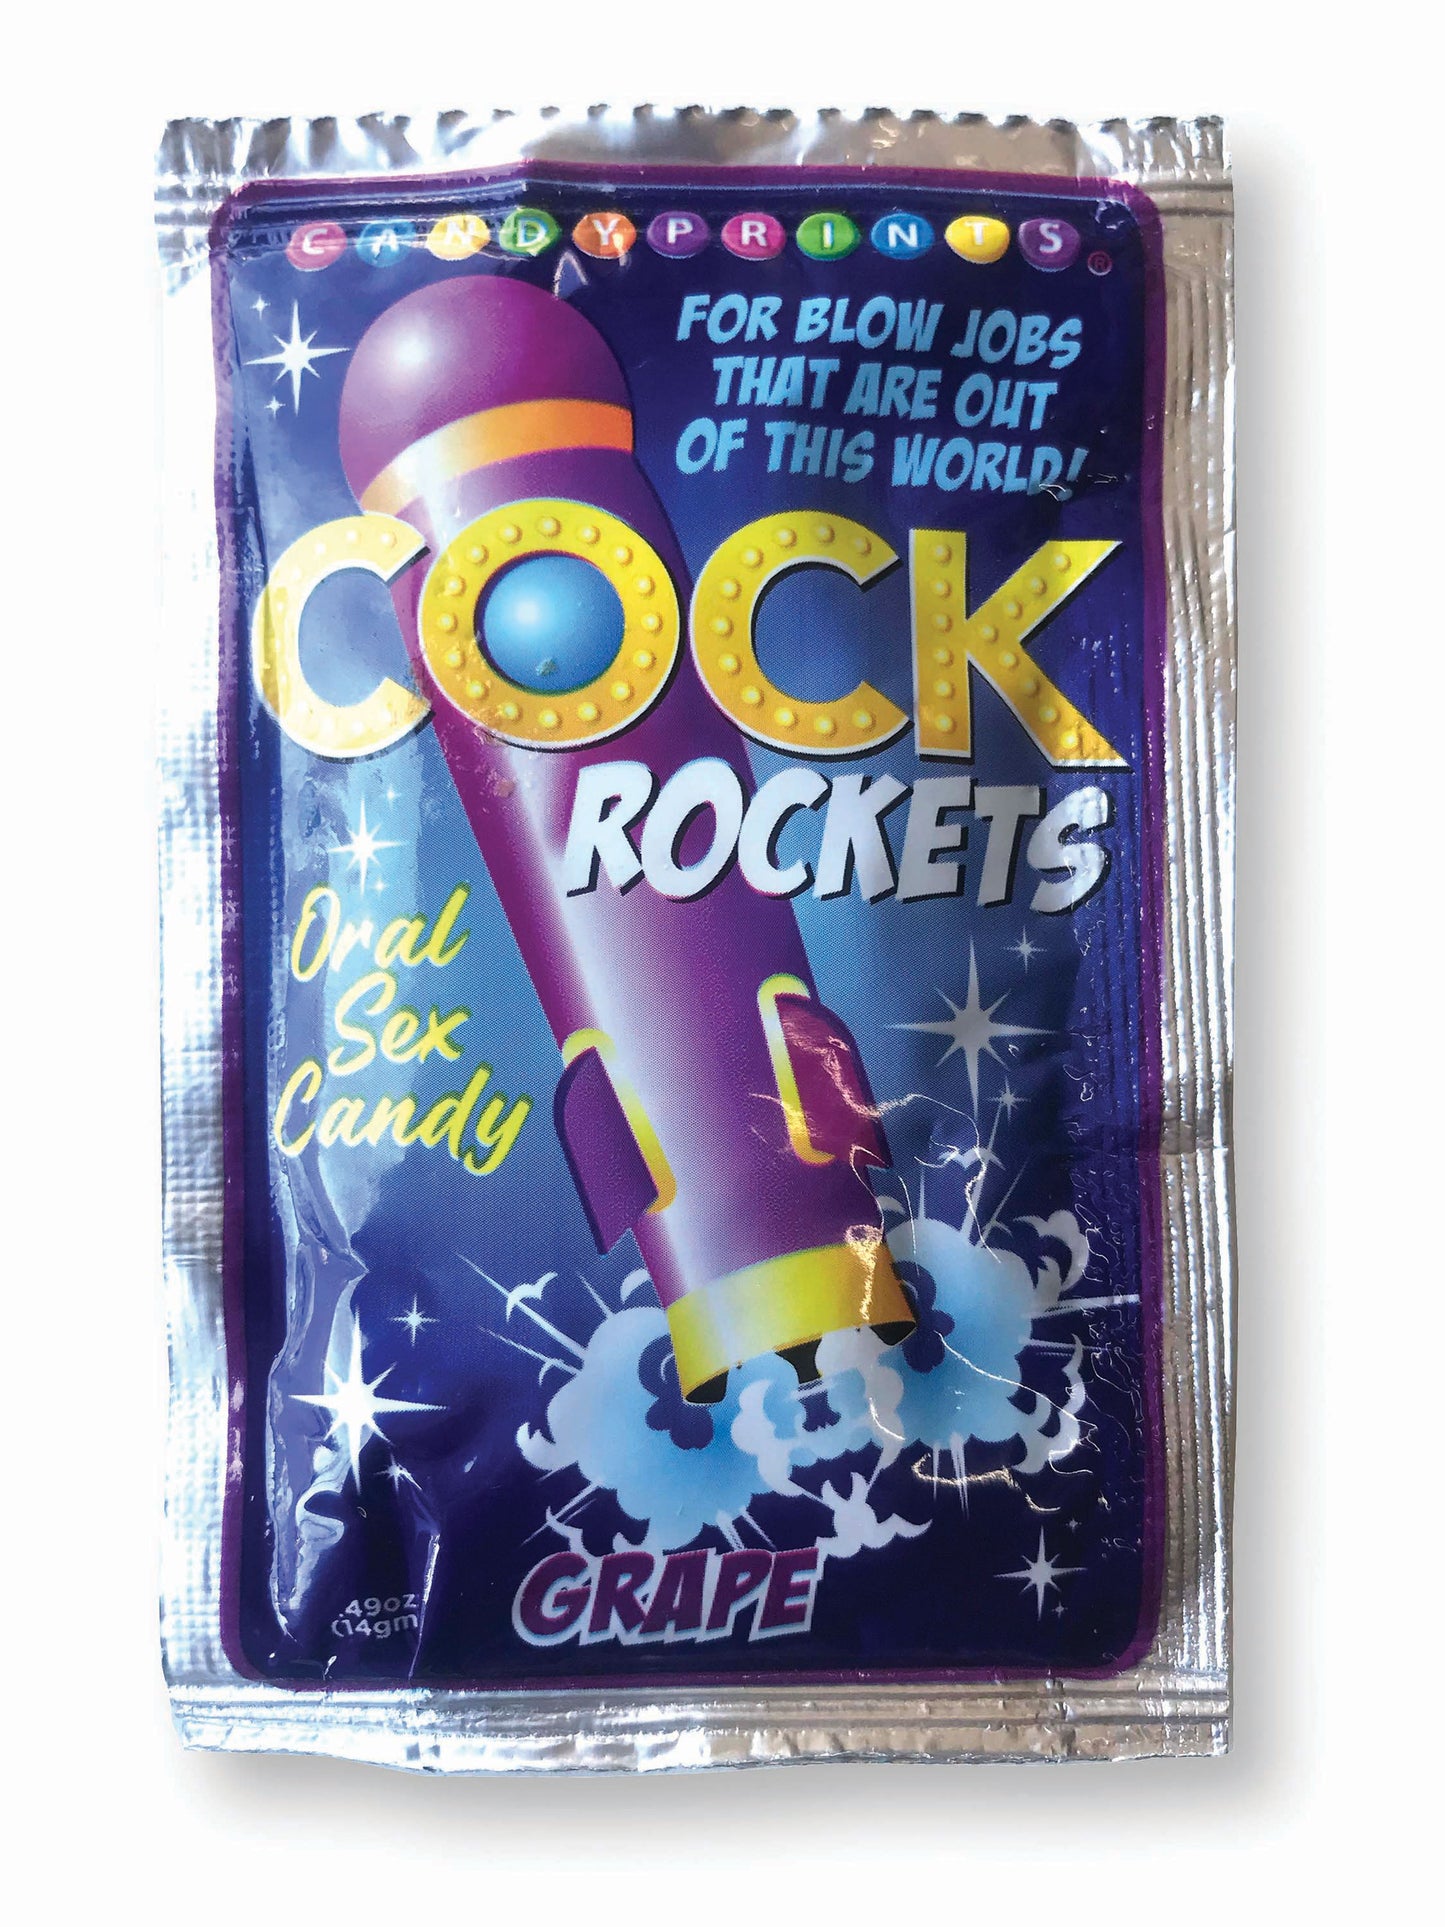 Cock Rockets